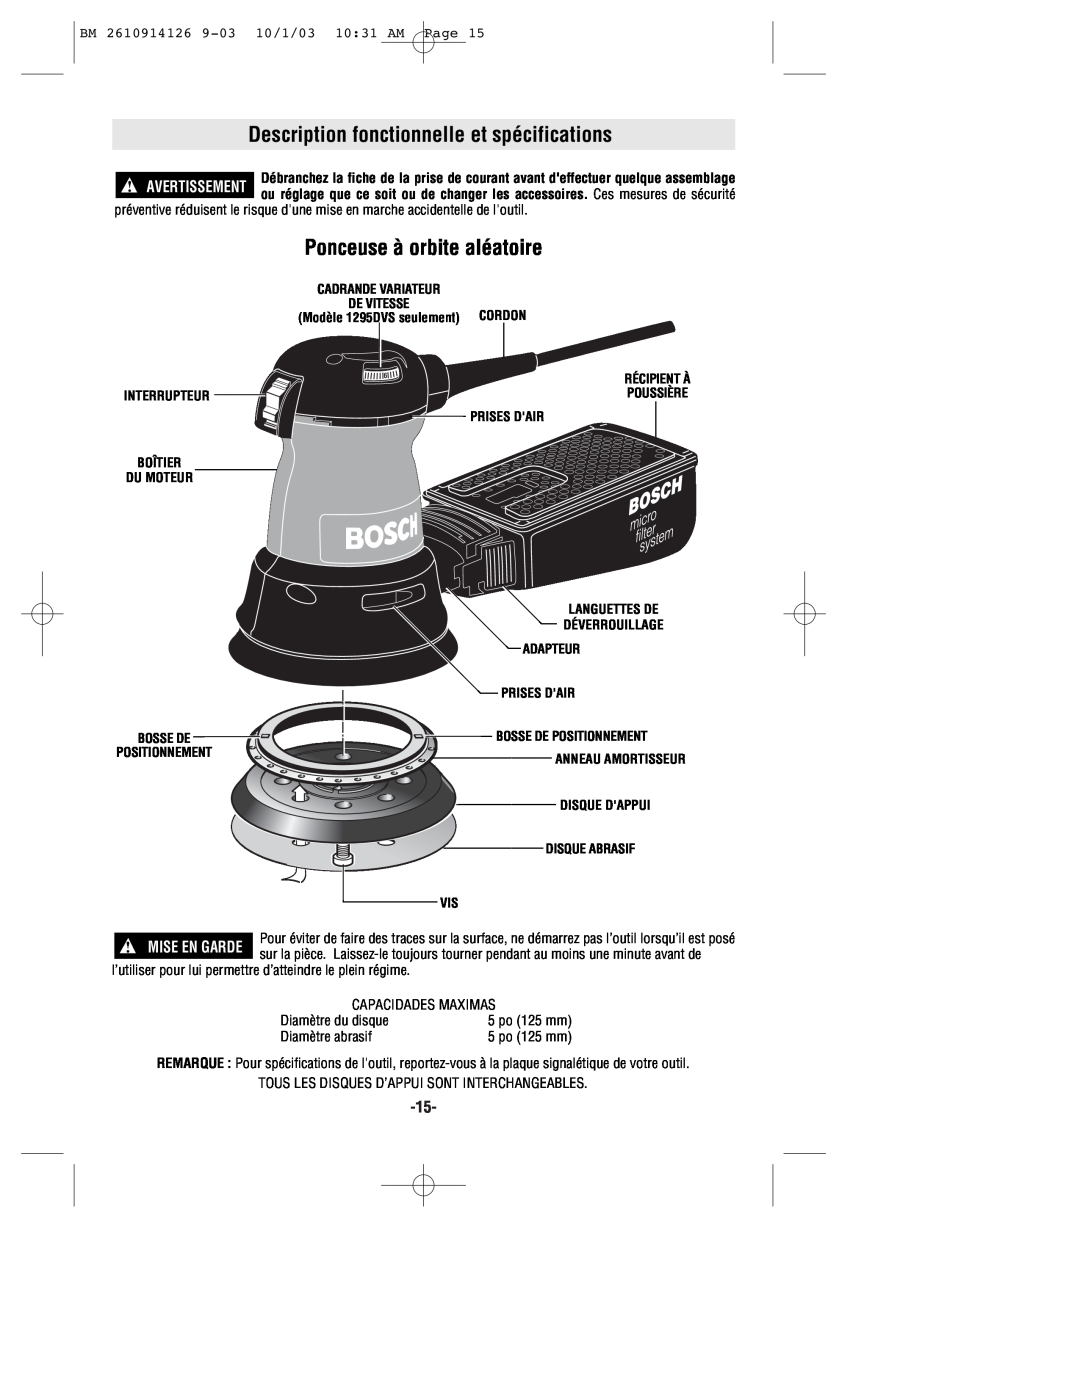 Bosch Power Tools 1295DH Description fonctionnelle et spécifications, Ponceuse à orbite aléatoire, 10/1/03 1031 AM Page 